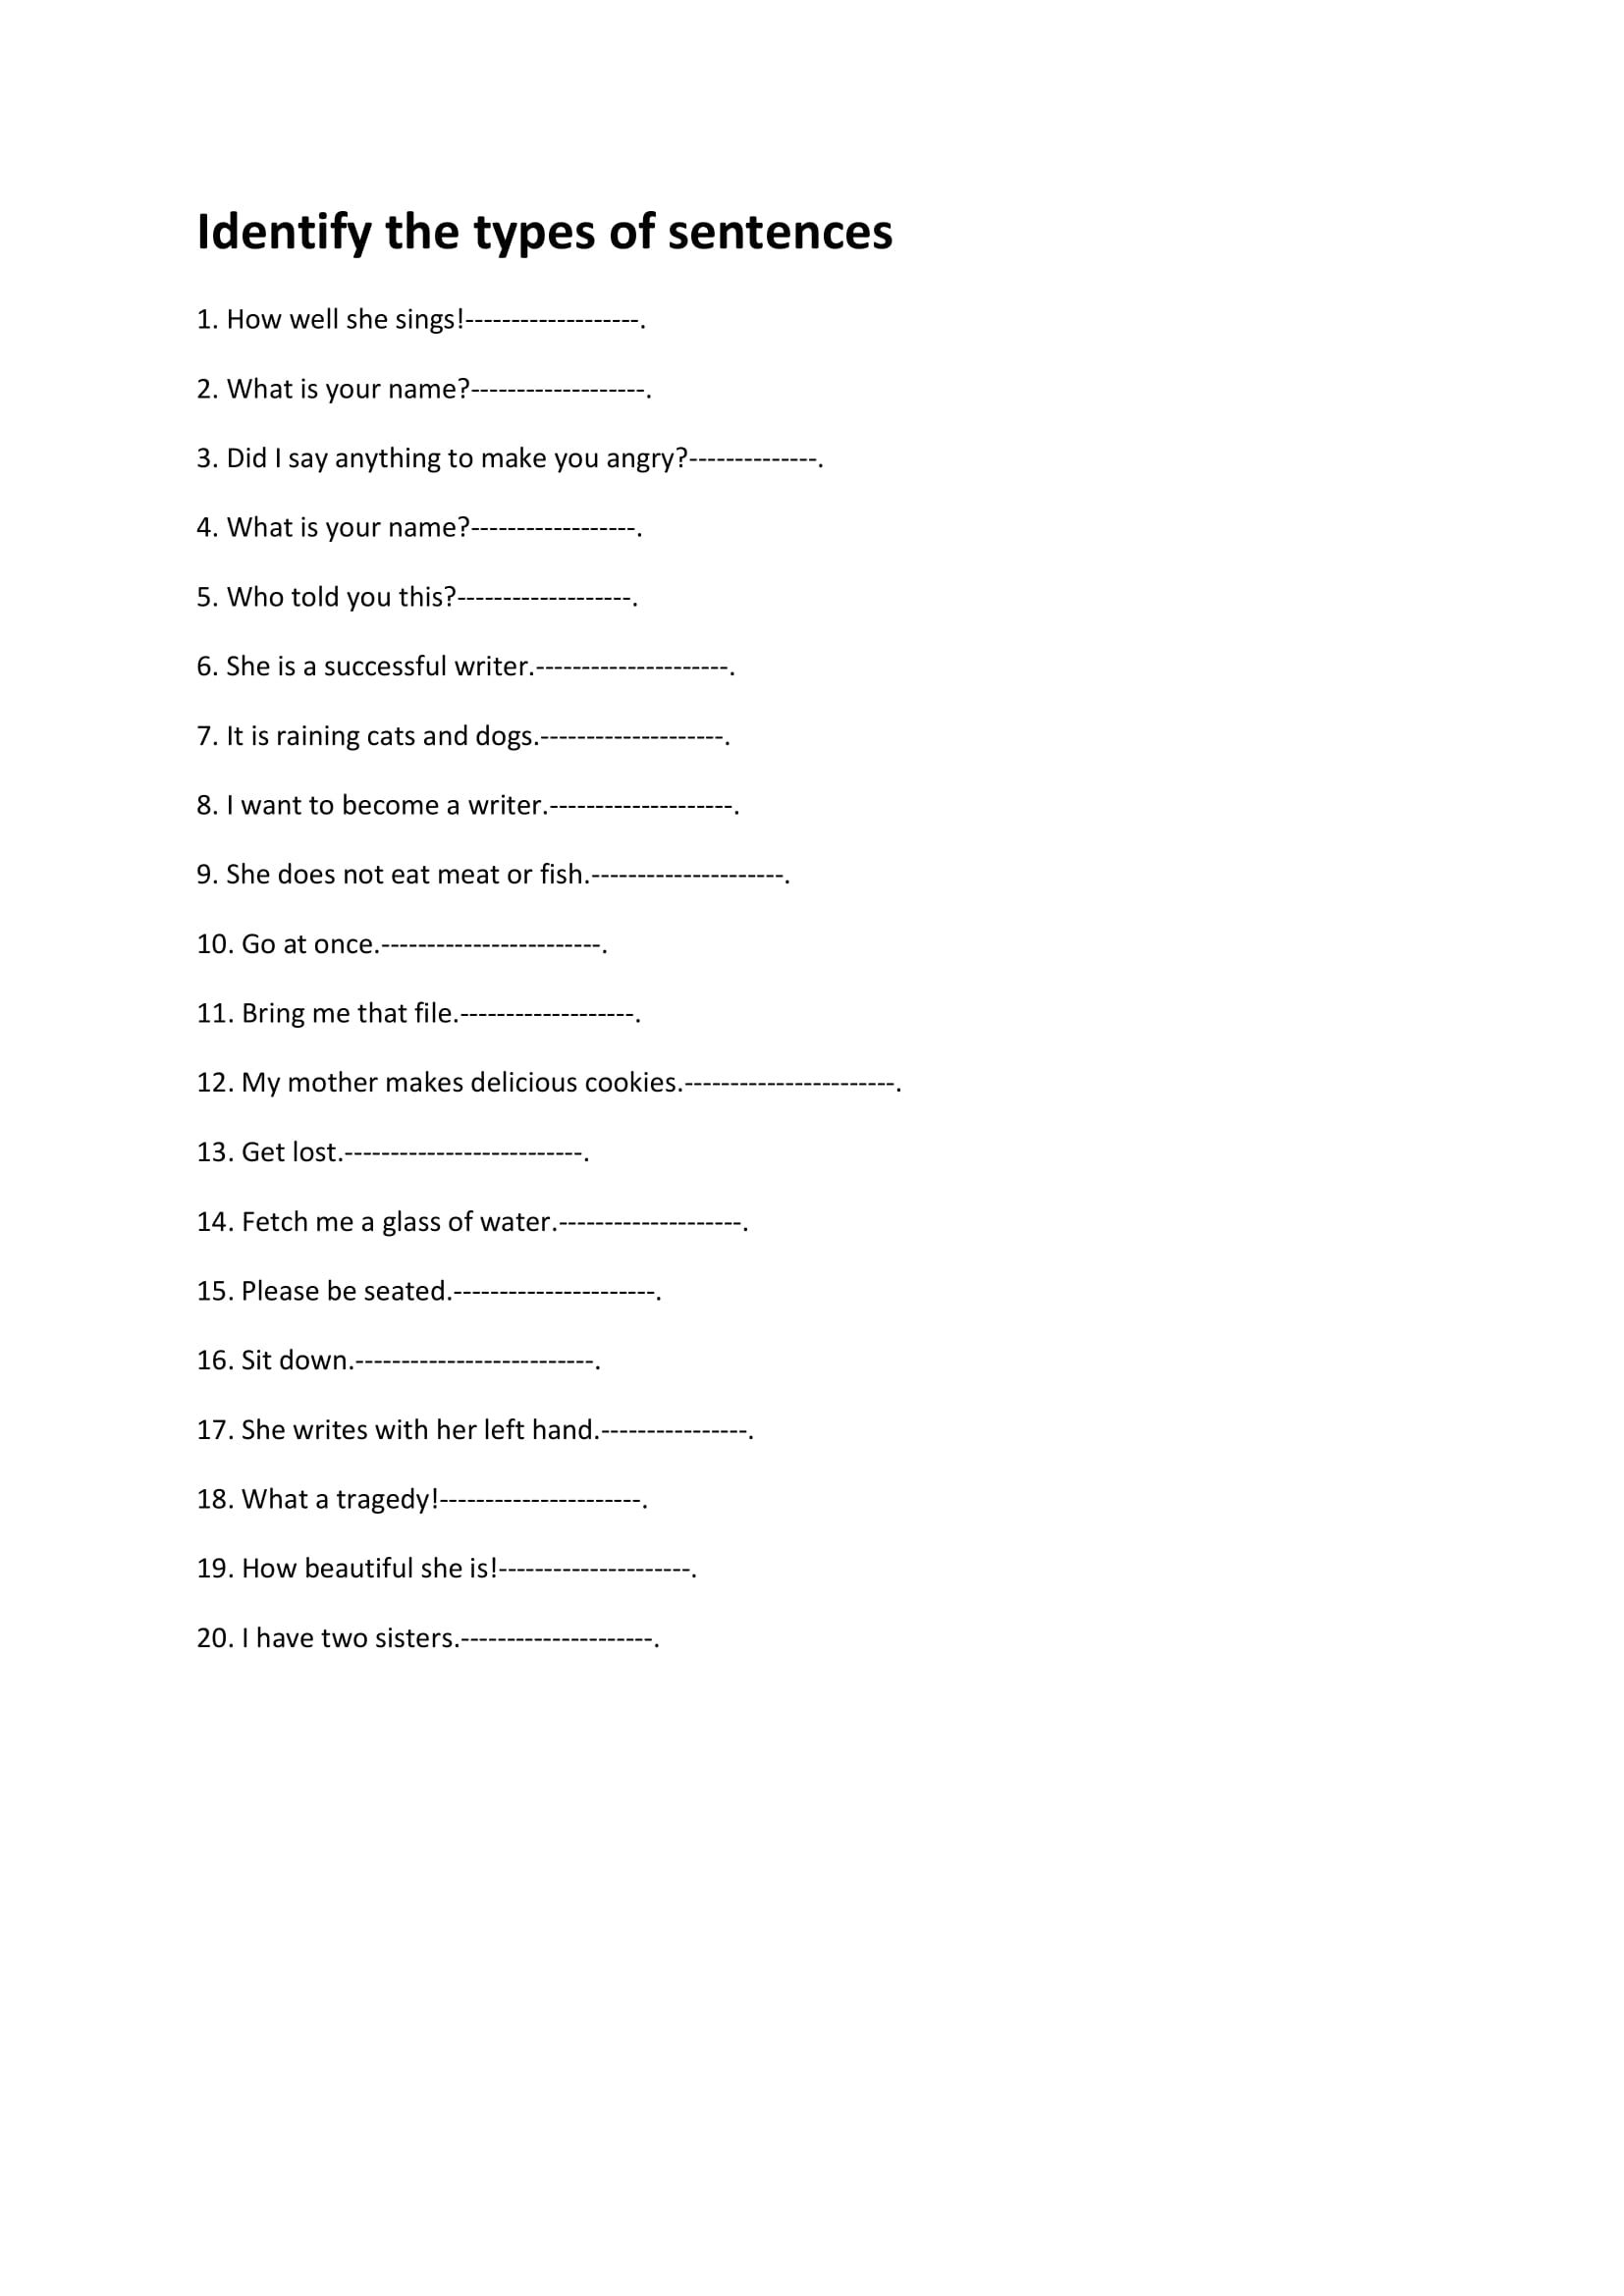 worksheetworks-identifying-sentence-types-1-1-pdf